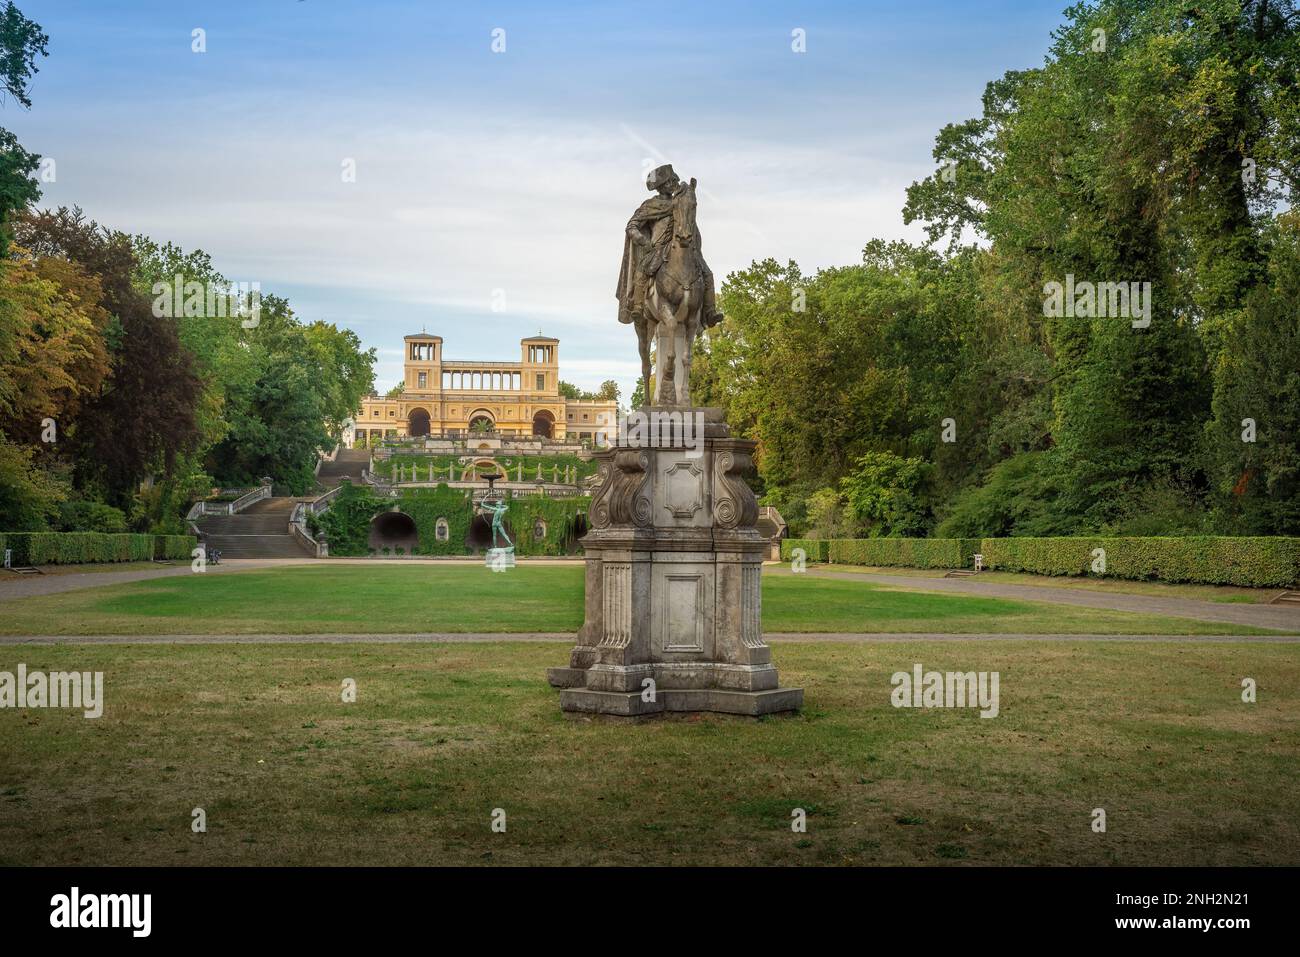 Blick auf den Park Sanssouci mit Orangeriepalast, Frederick dem Großen und den Apollo-Statuen - Potsdam, Brandenburg, Deutschland Stockfoto